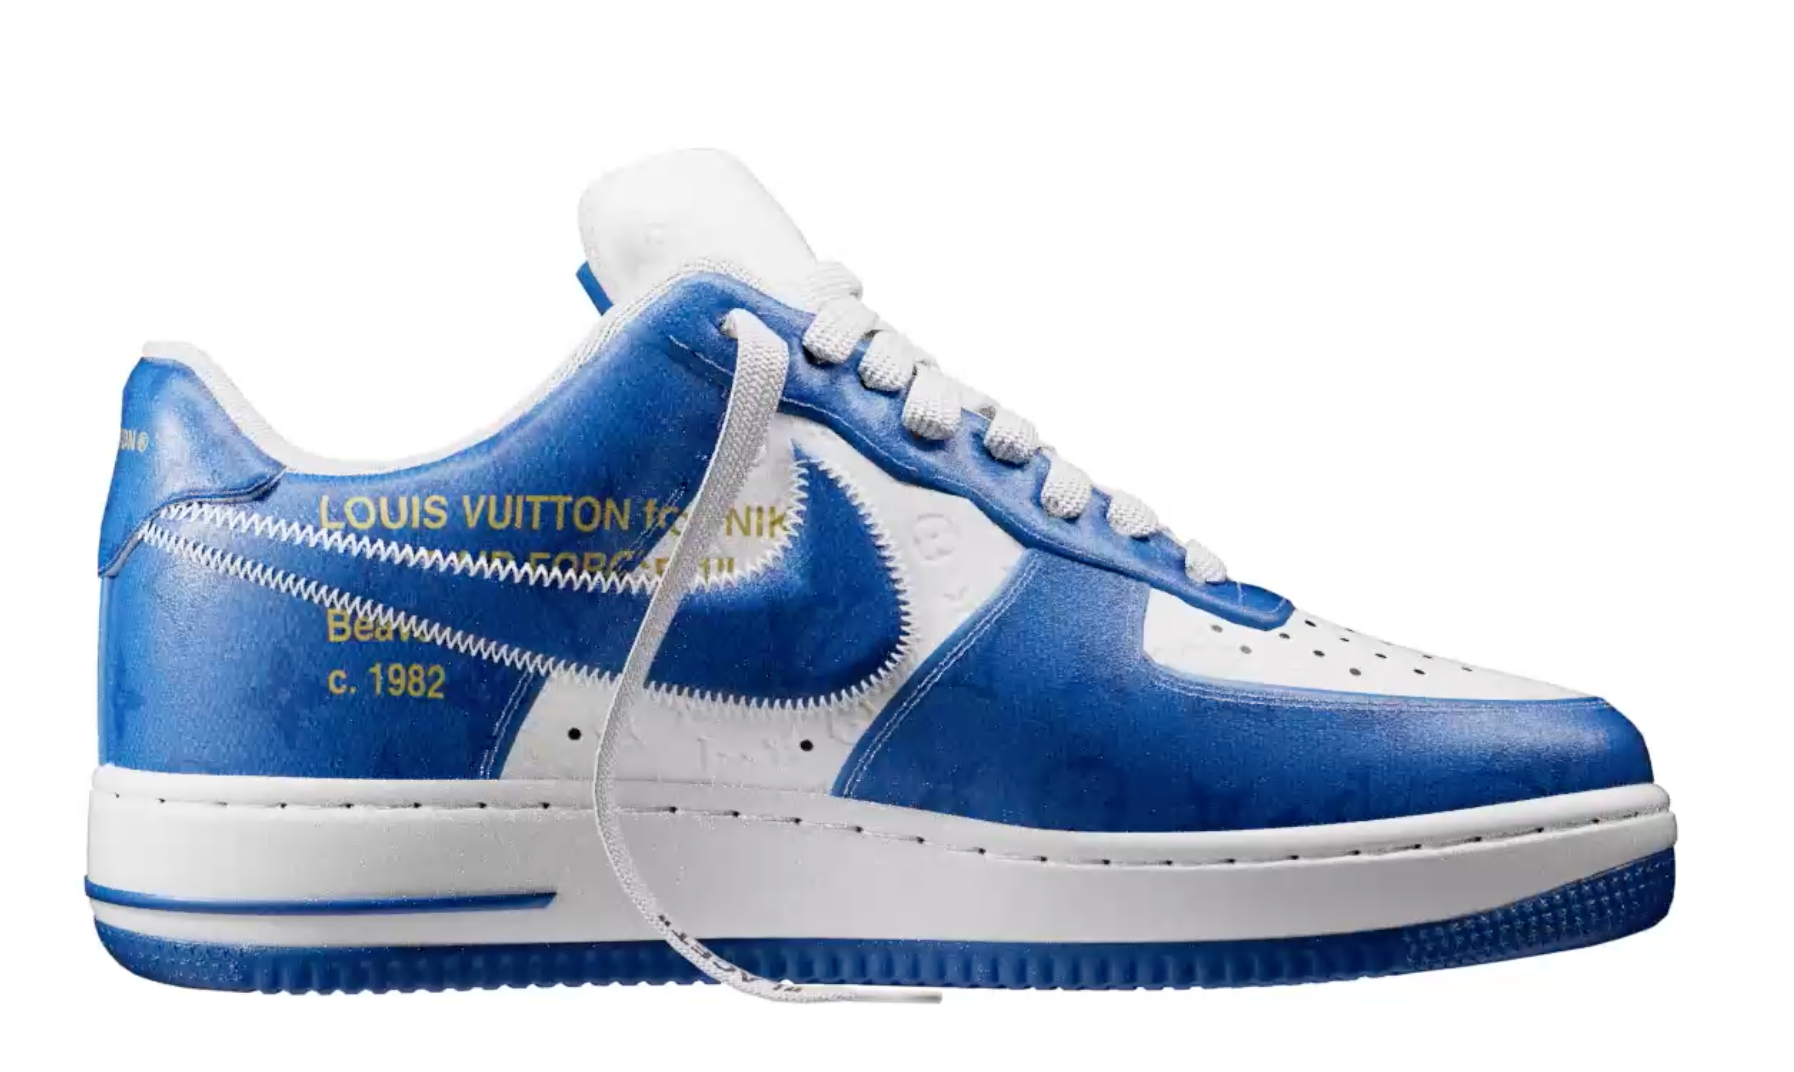 Louis Vuitton Nike Air Force 1 Low White Royal Blue Size UK 10- EU 44.5- US 10.5